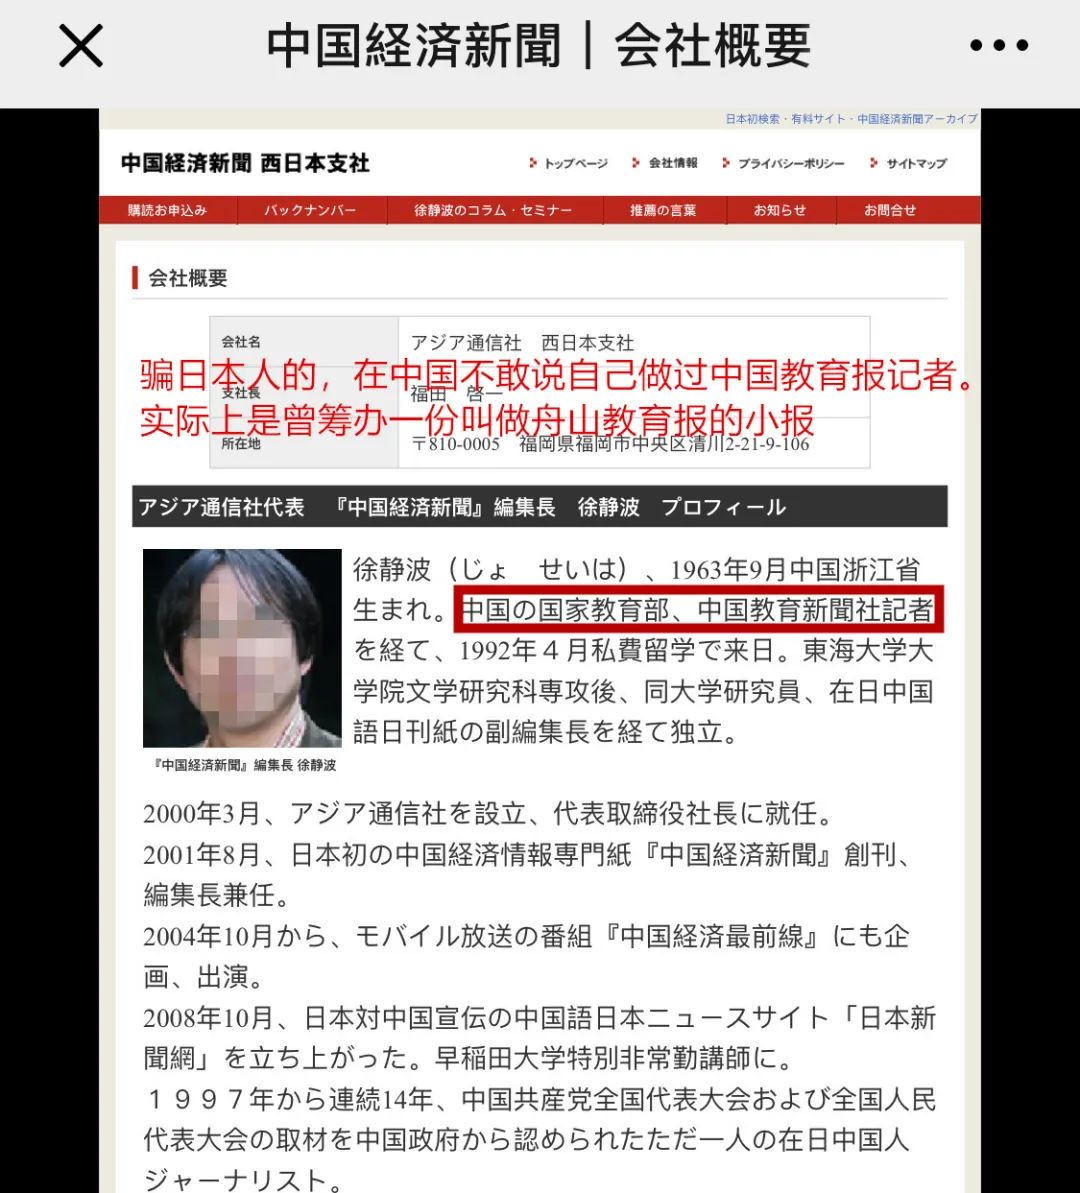 中国教育报 你们有徐静波这个记者吗 自由微信 Freewechat